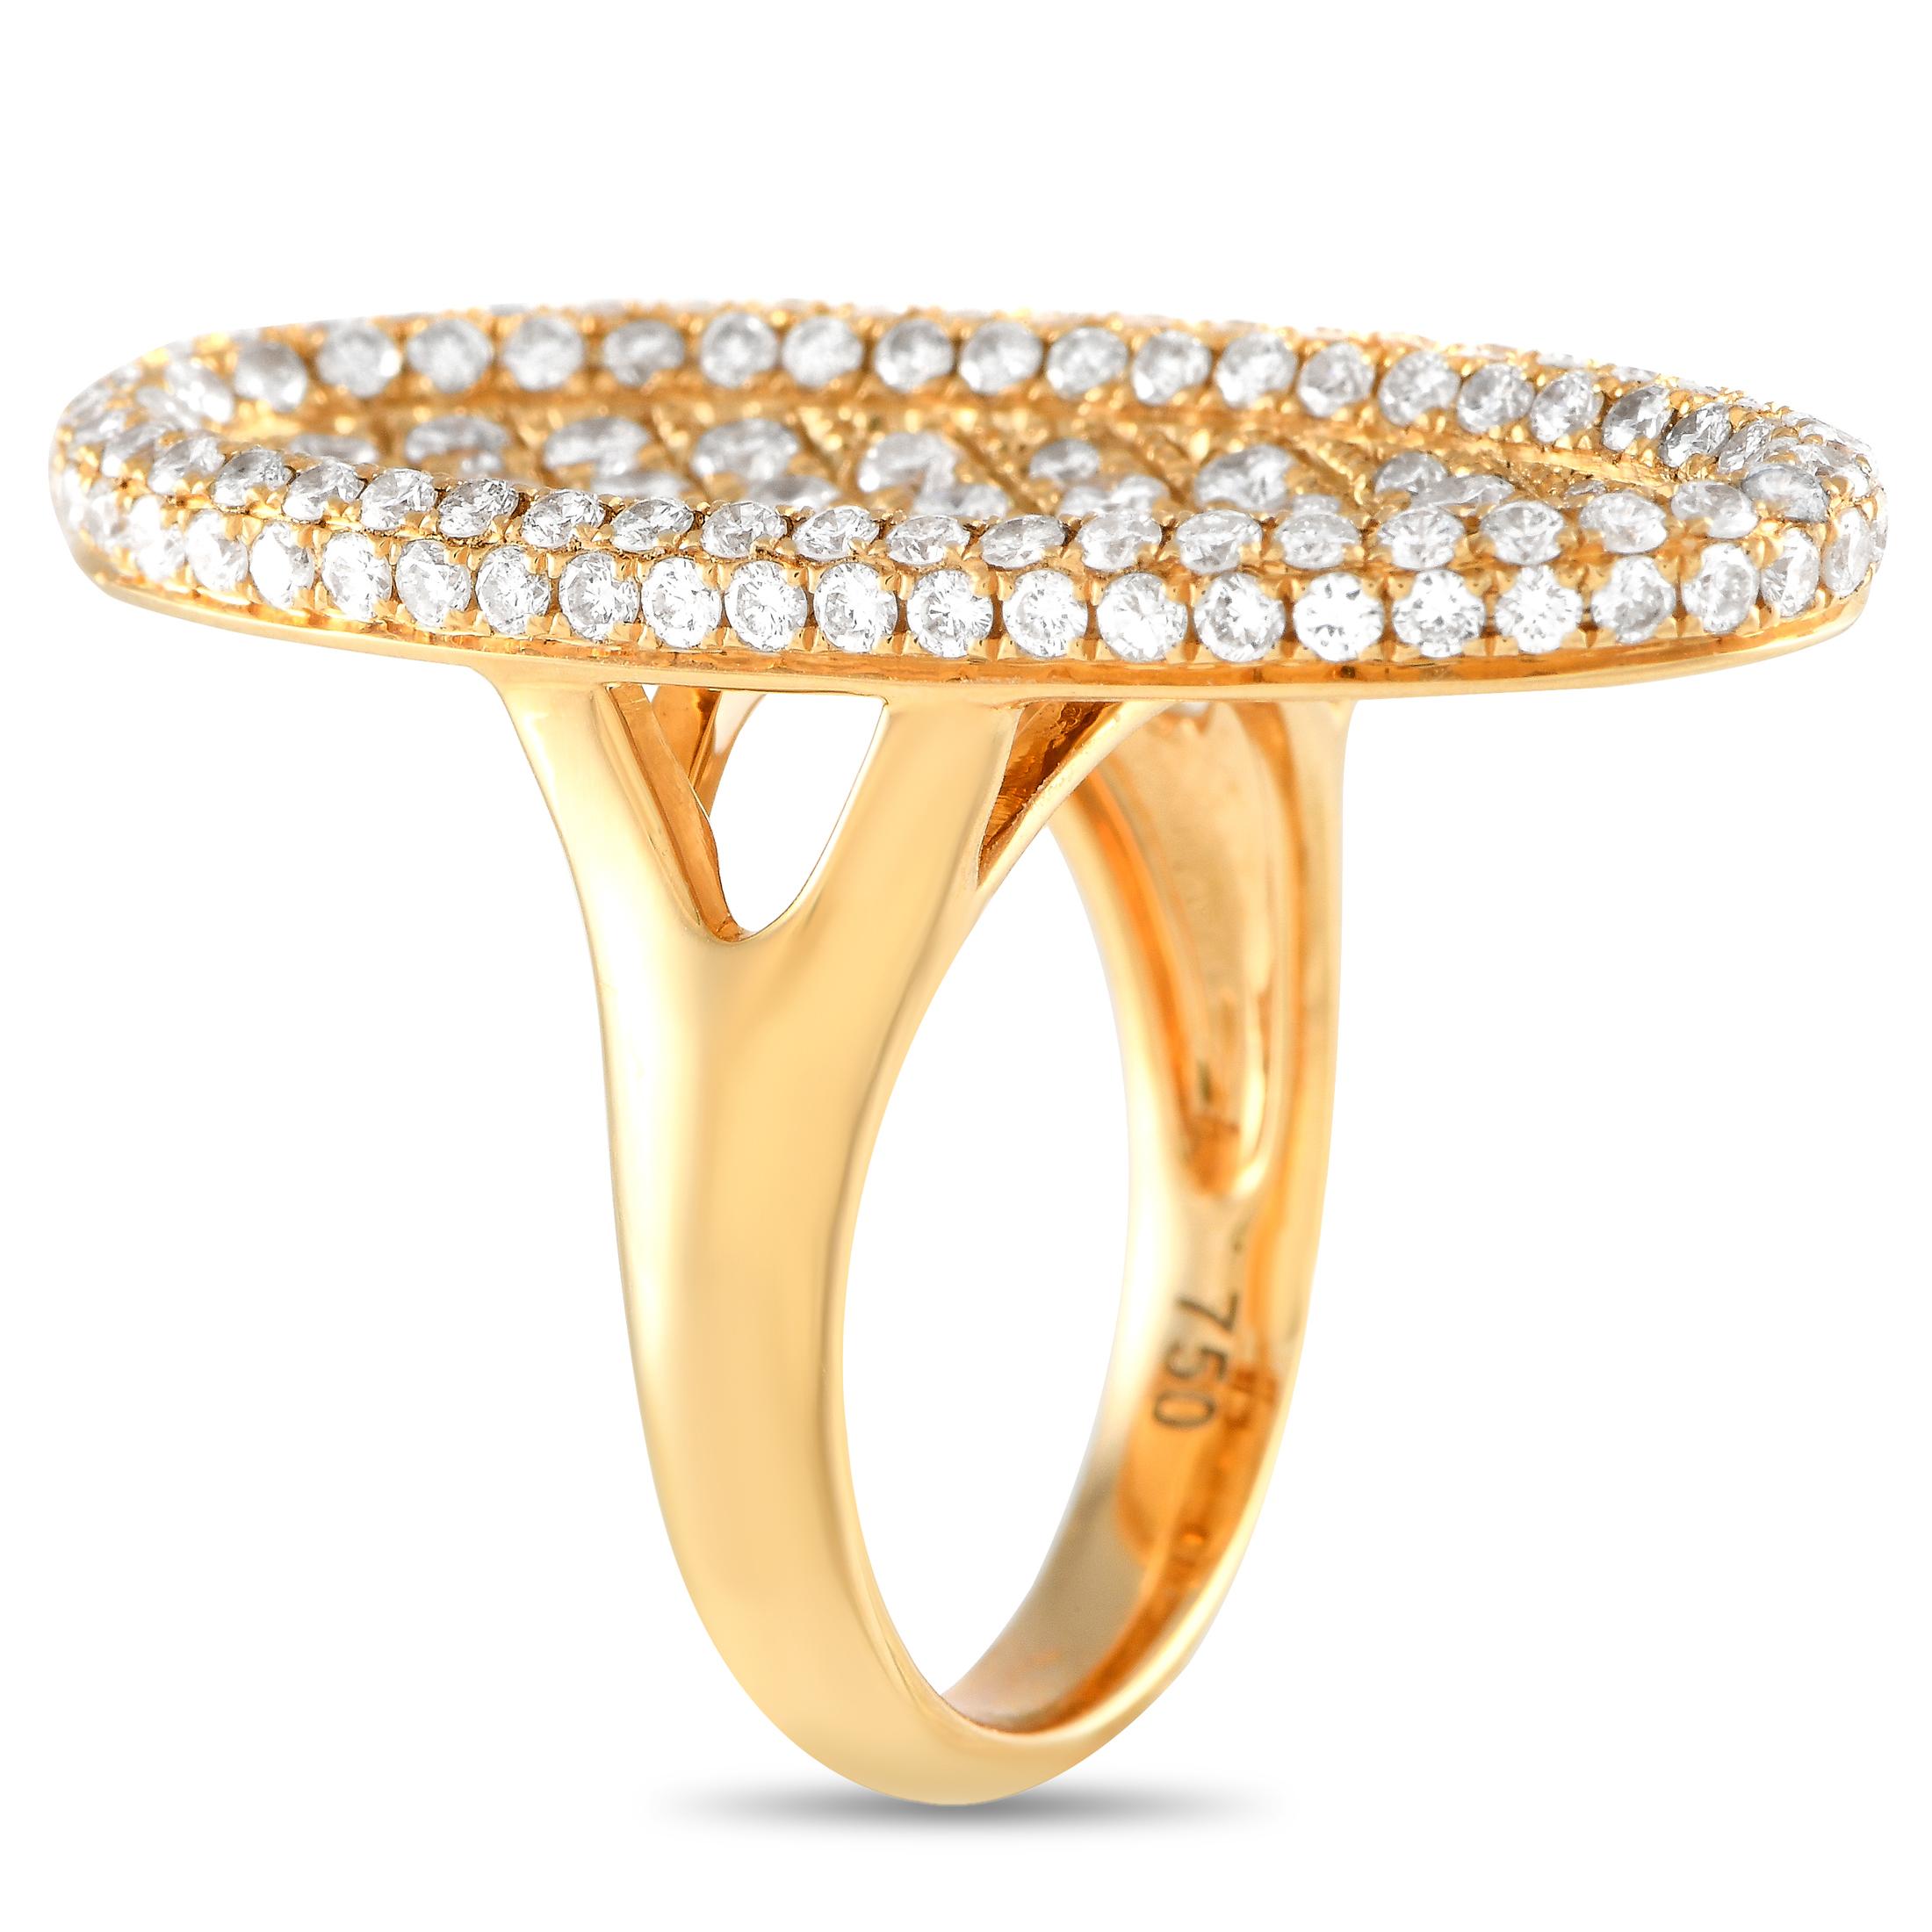 Dieser Ring aus 18 Karat Gelbgold ist ein LB-Exklusivprodukt und steht für die Kunst der Schlichtheit, während er gleichzeitig eine maximale stilistische Wirkung garantiert. Er verfügt über einen geteilten Schaft, der eine übergroße ovale Platte aus